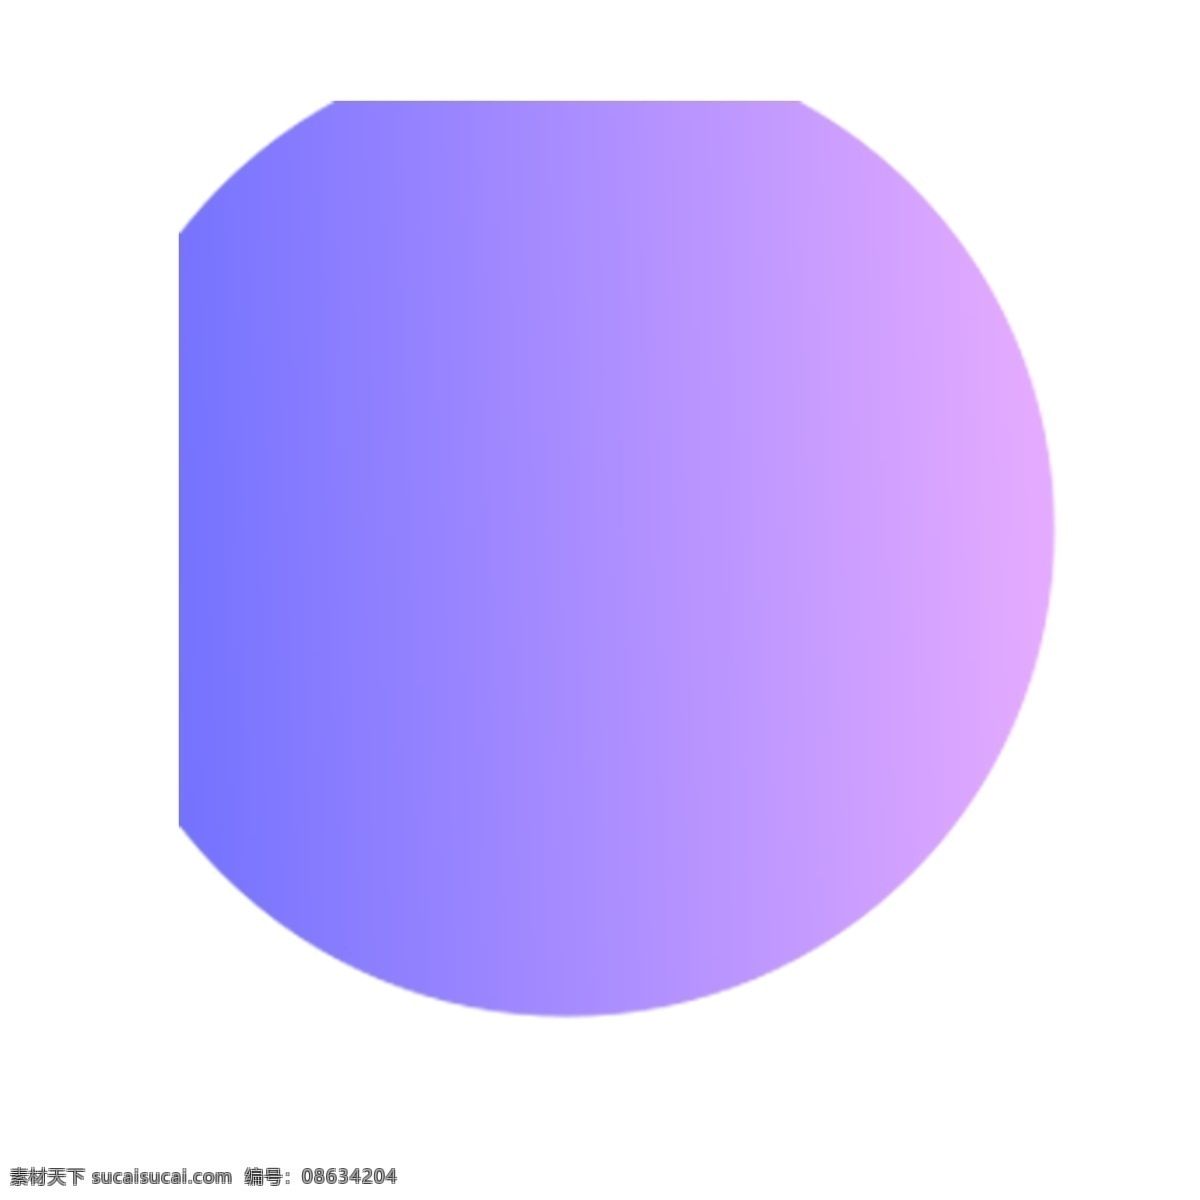 不规则圆形 圆形 不规则 紫色